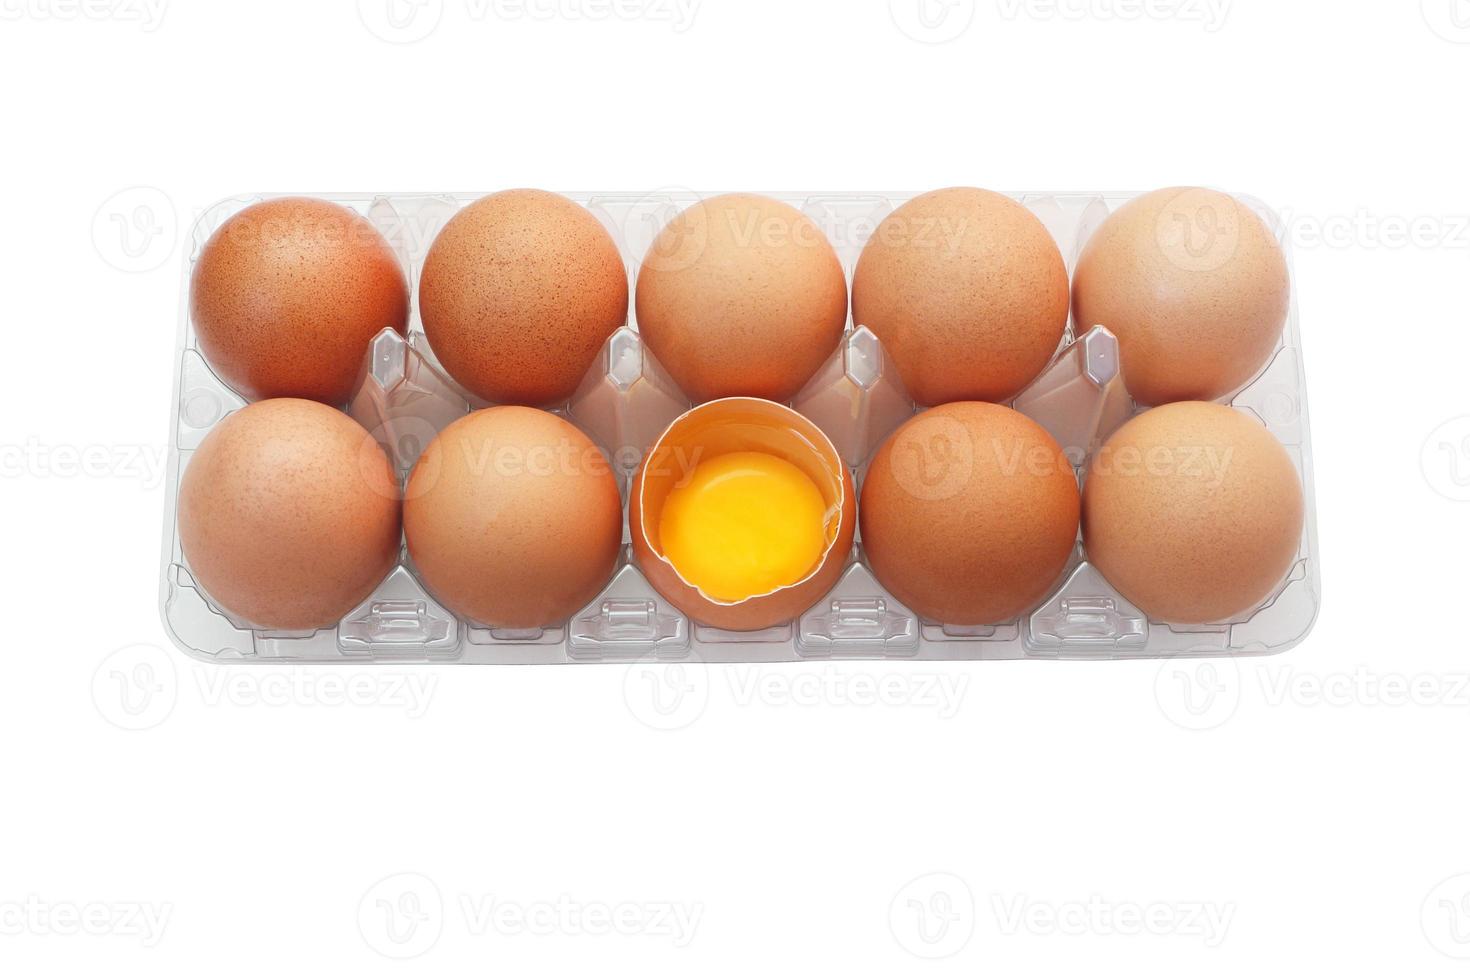 uova di pollo in vassoio di plastica isolato su sfondo bianco. un uovo è stato aperto per rivelare il tuorlo fresco all'interno. foto